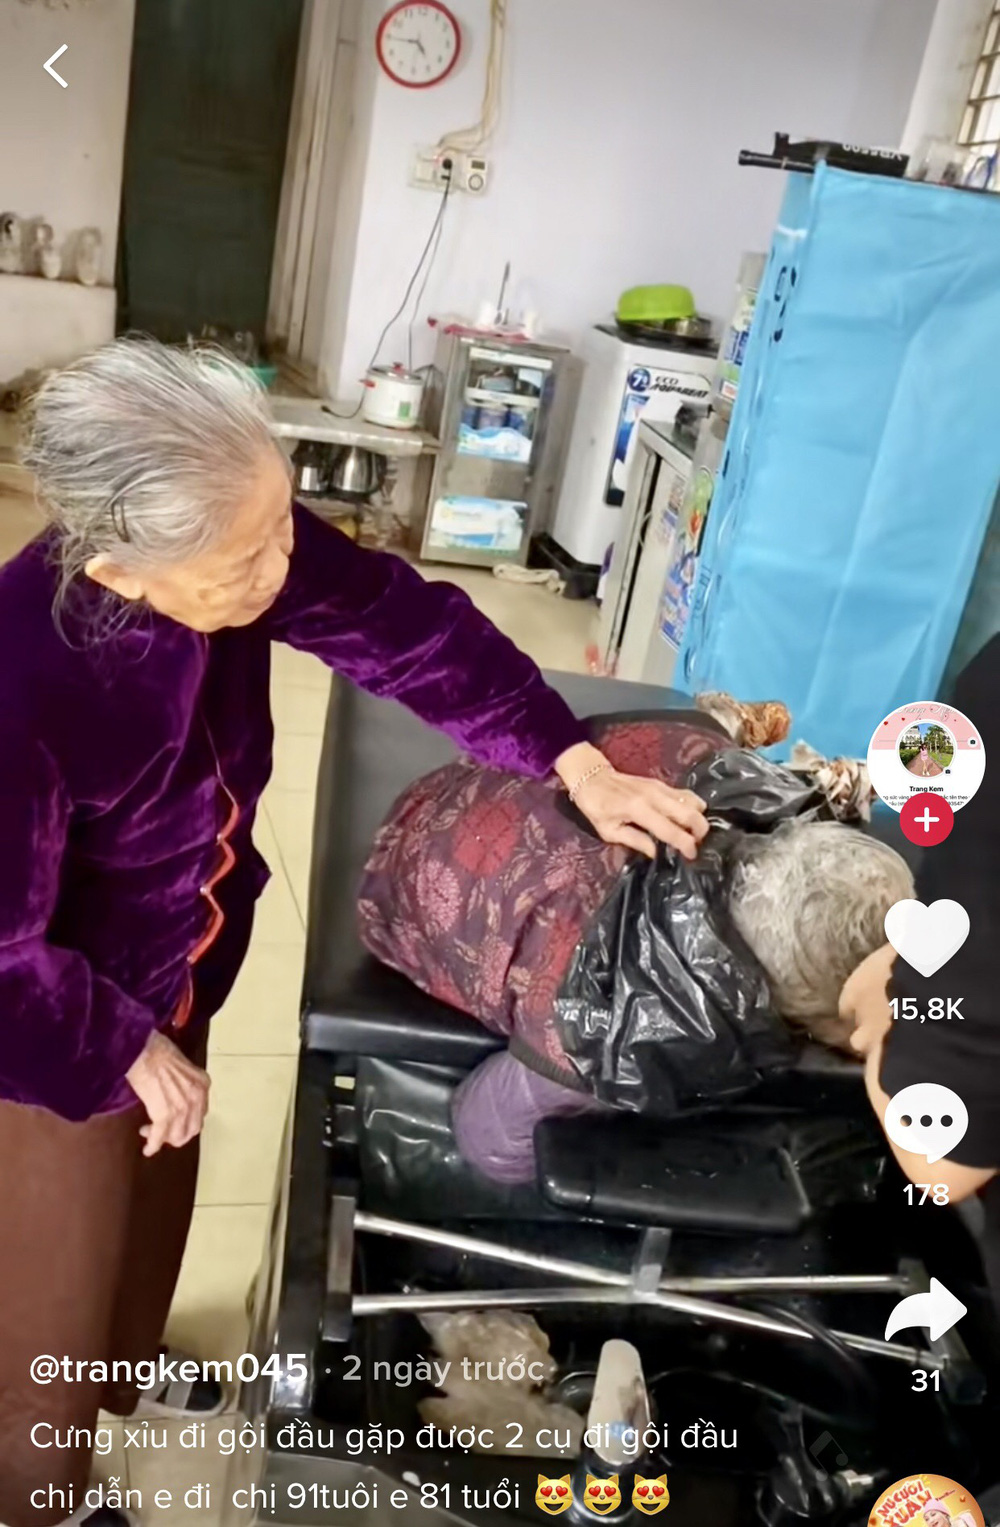 Cụ bà 91 tuổi dỗ mãi em gái 81 tuổi mới gội đầu, cảm động nhất là quyết định của chủ tiệm  - Ảnh 3.